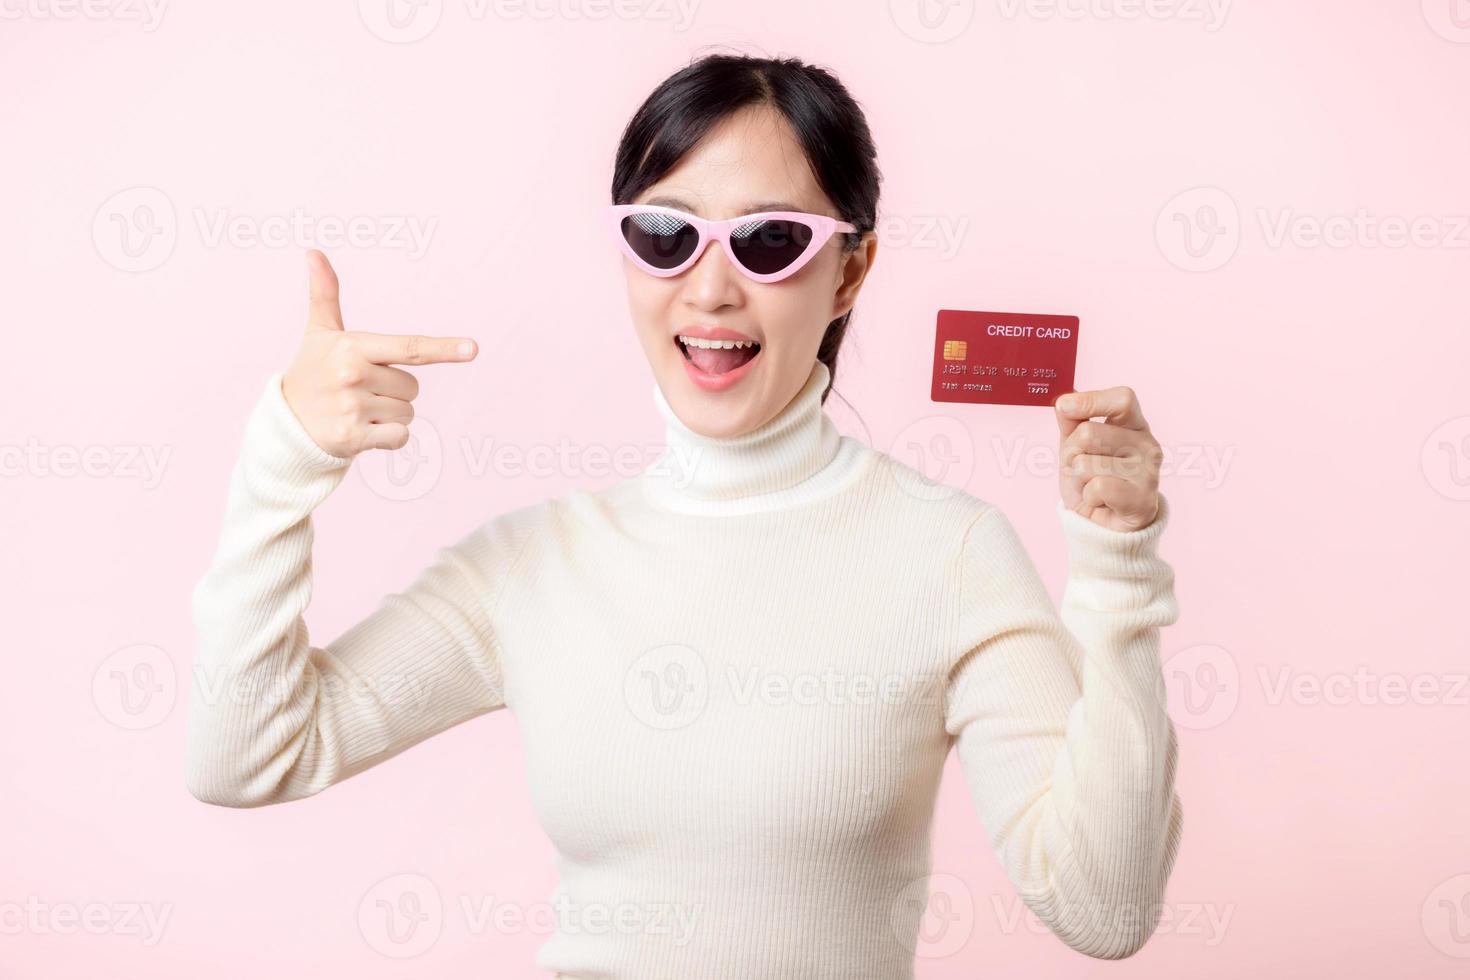 fascinerande roligt glad ung kvinna av asiatisk etnicitet 20s år gammal med ha på sig solglasögon bär vit skjorta håll i hand kreditera Bank kort isolerat på enkel pastell ljus rosa bakgrund studio porträtt. foto